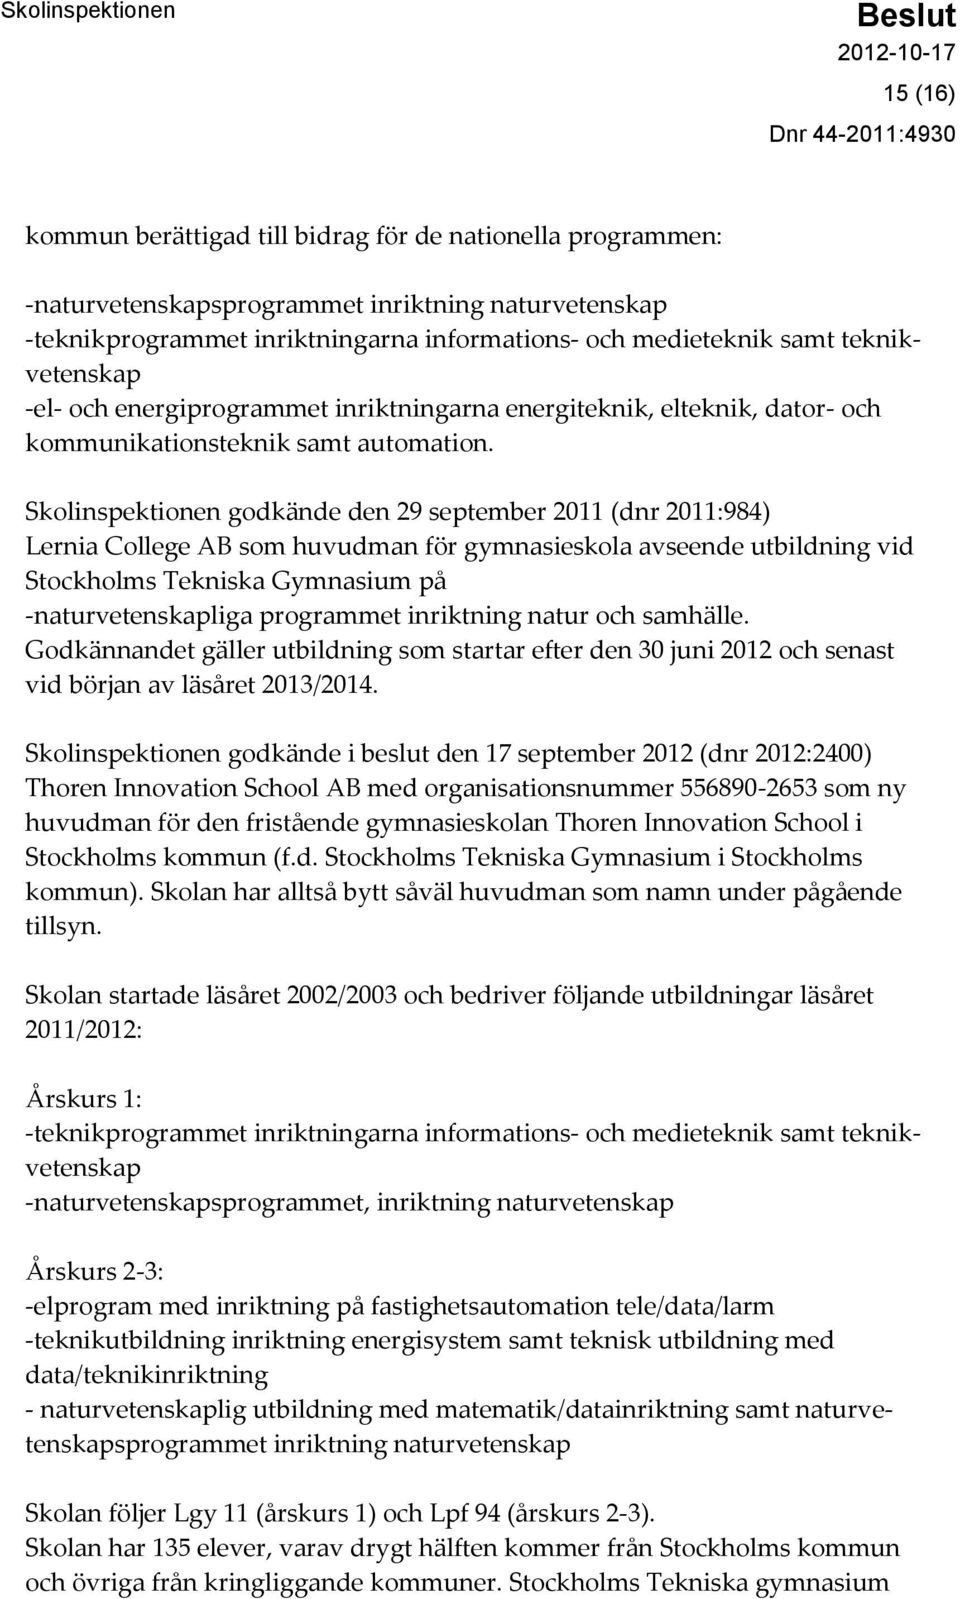 Skolinspektionen godkände den 29 september 2011 (dnr 2011:984) Lernia College AB som huvudman för gymnasieskola avseende utbildning vid Stockholms Tekniska Gymnasium på -naturvetenskapliga programmet